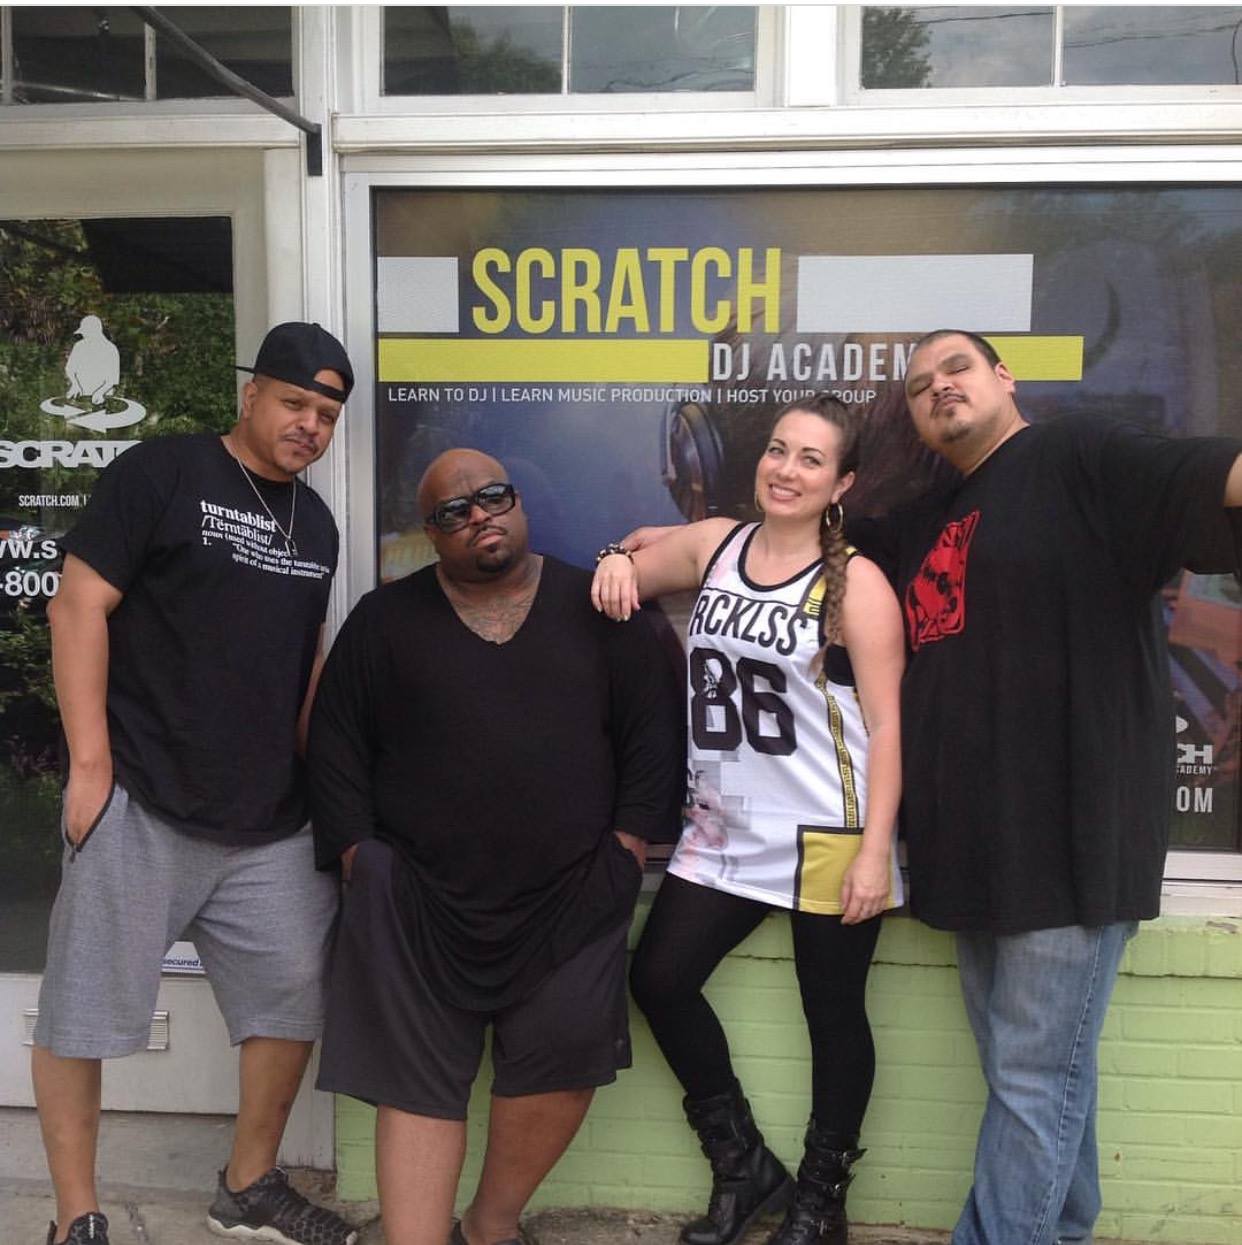 Scratch DJ Academy - New York Informative